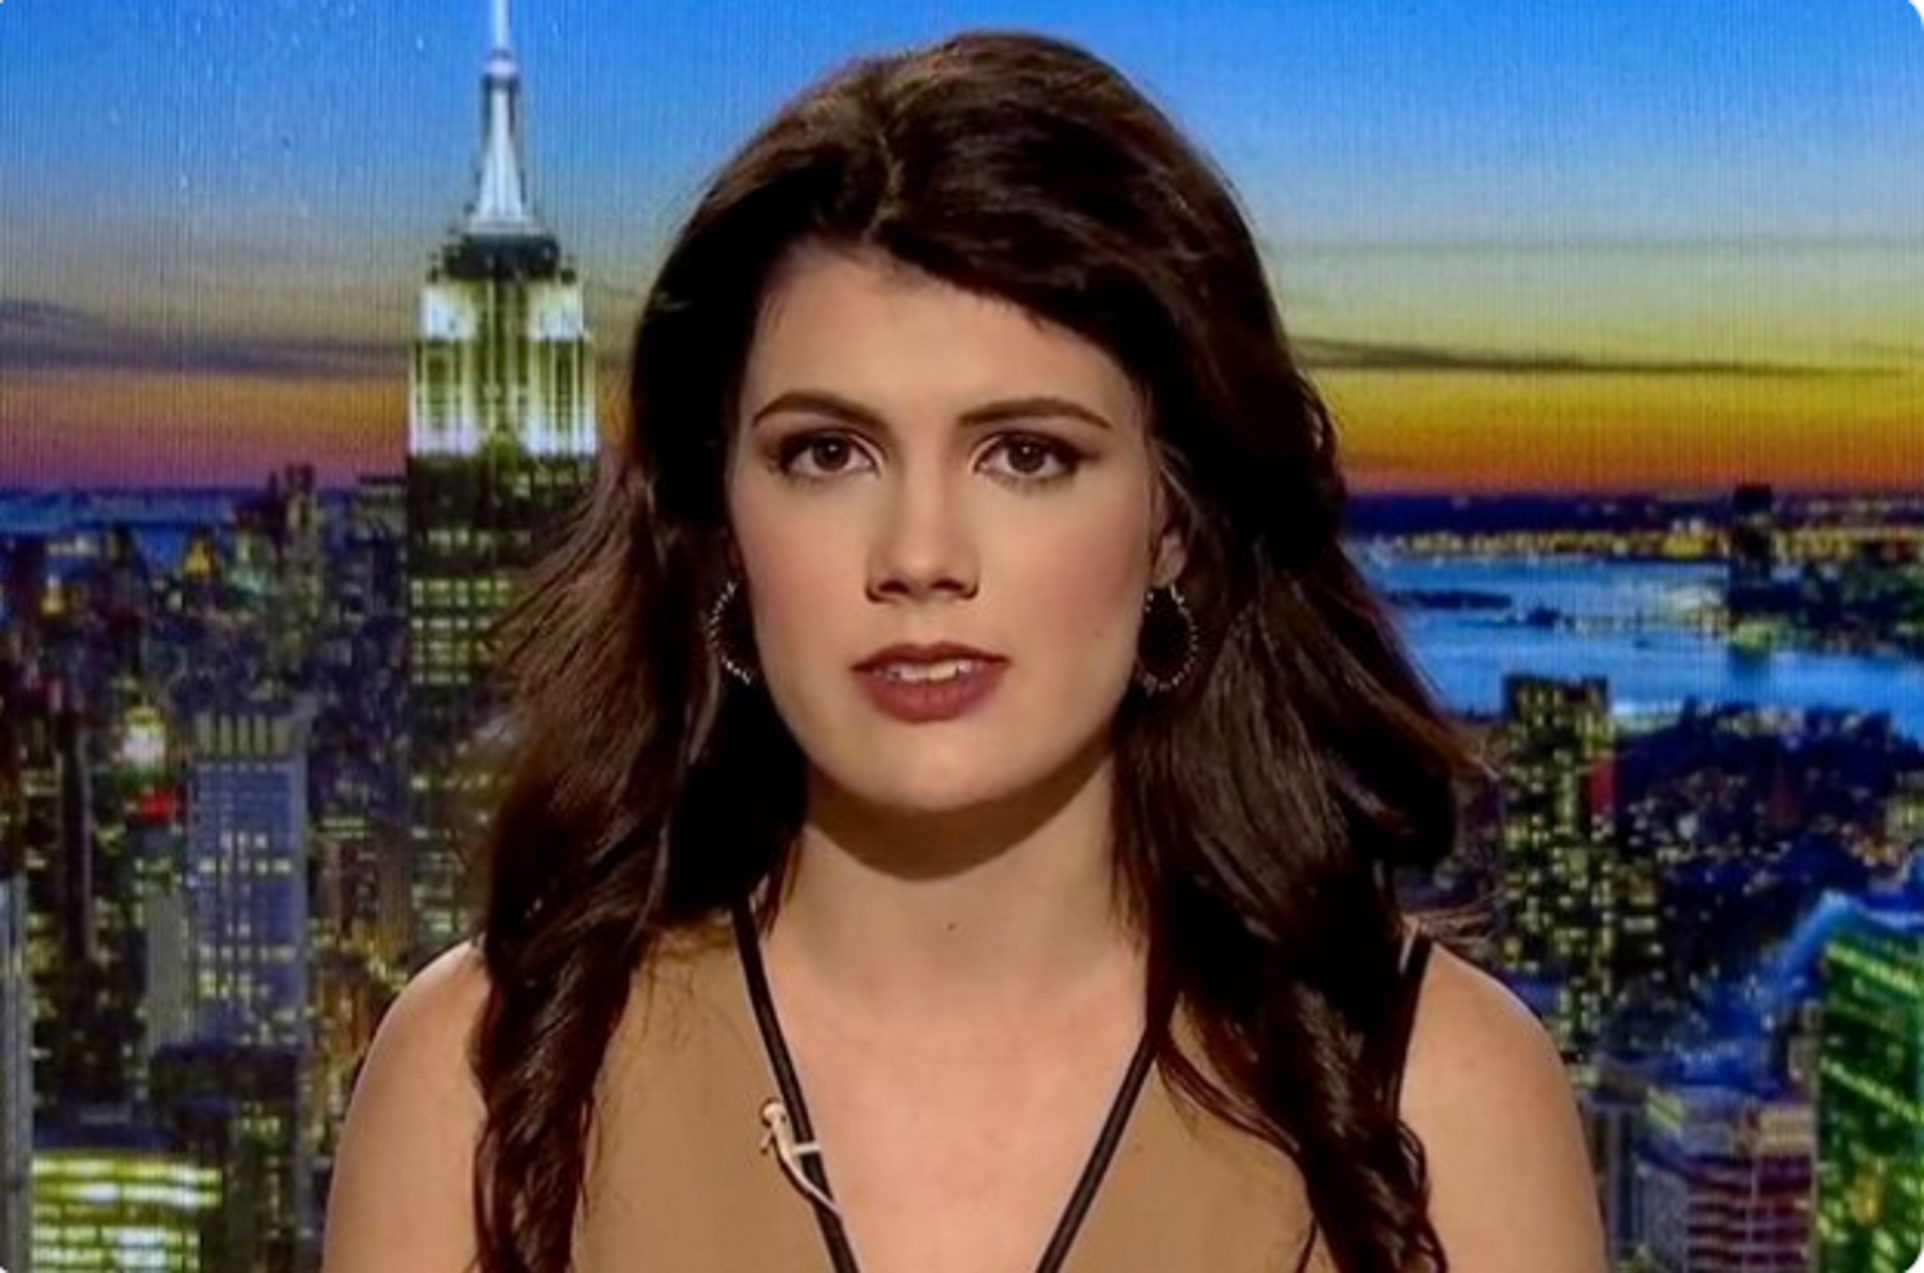 Una presentadora de TV anti-vacunes mor de meningitis i grip als 26 anys